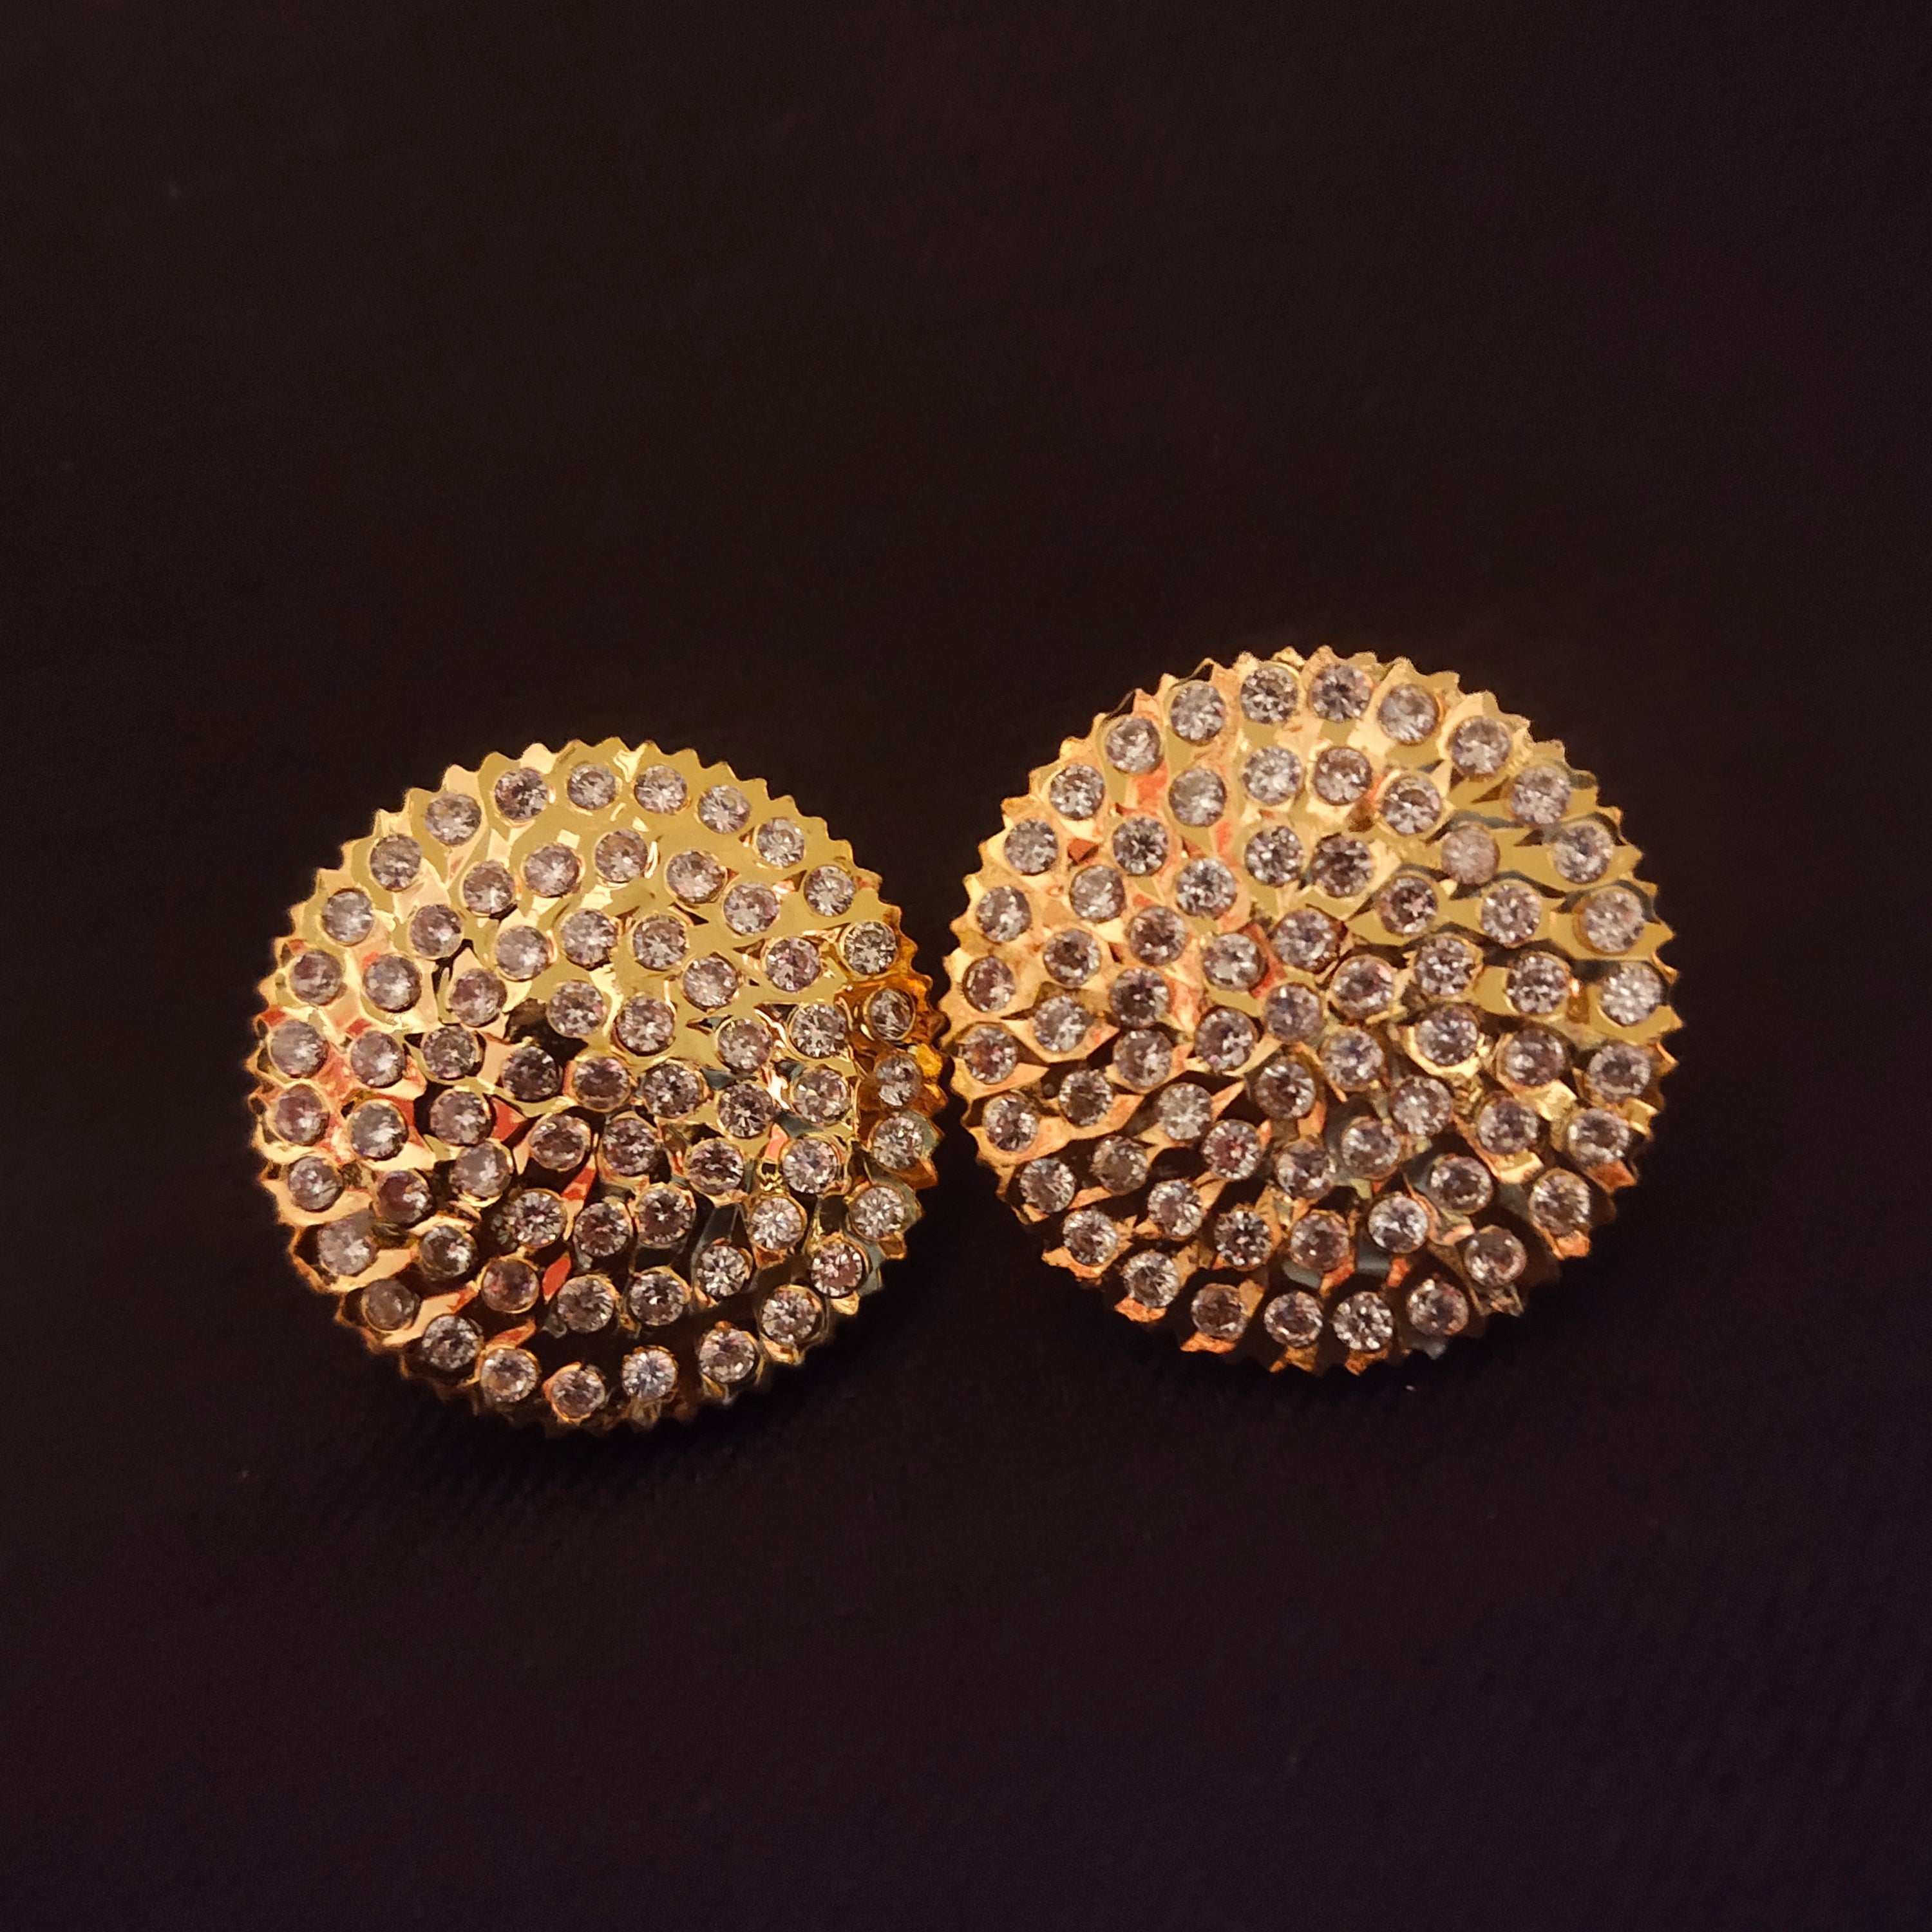 Gold Double Flower Earrings | New Look